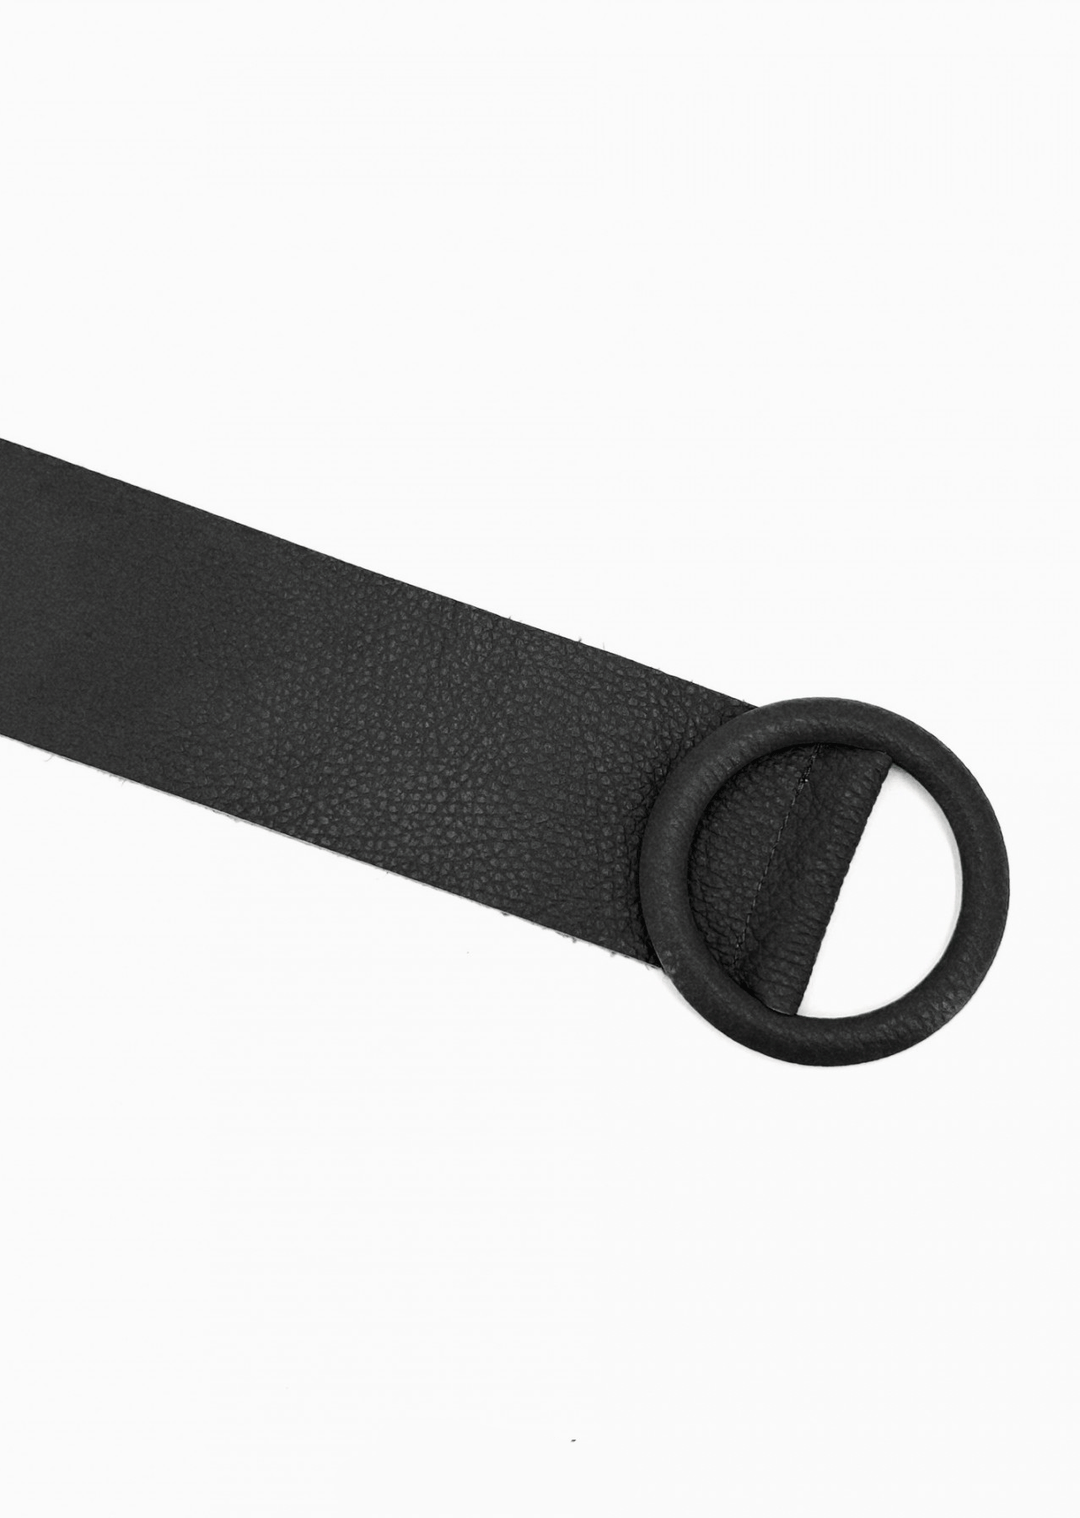 Black Leather Wide Belt 